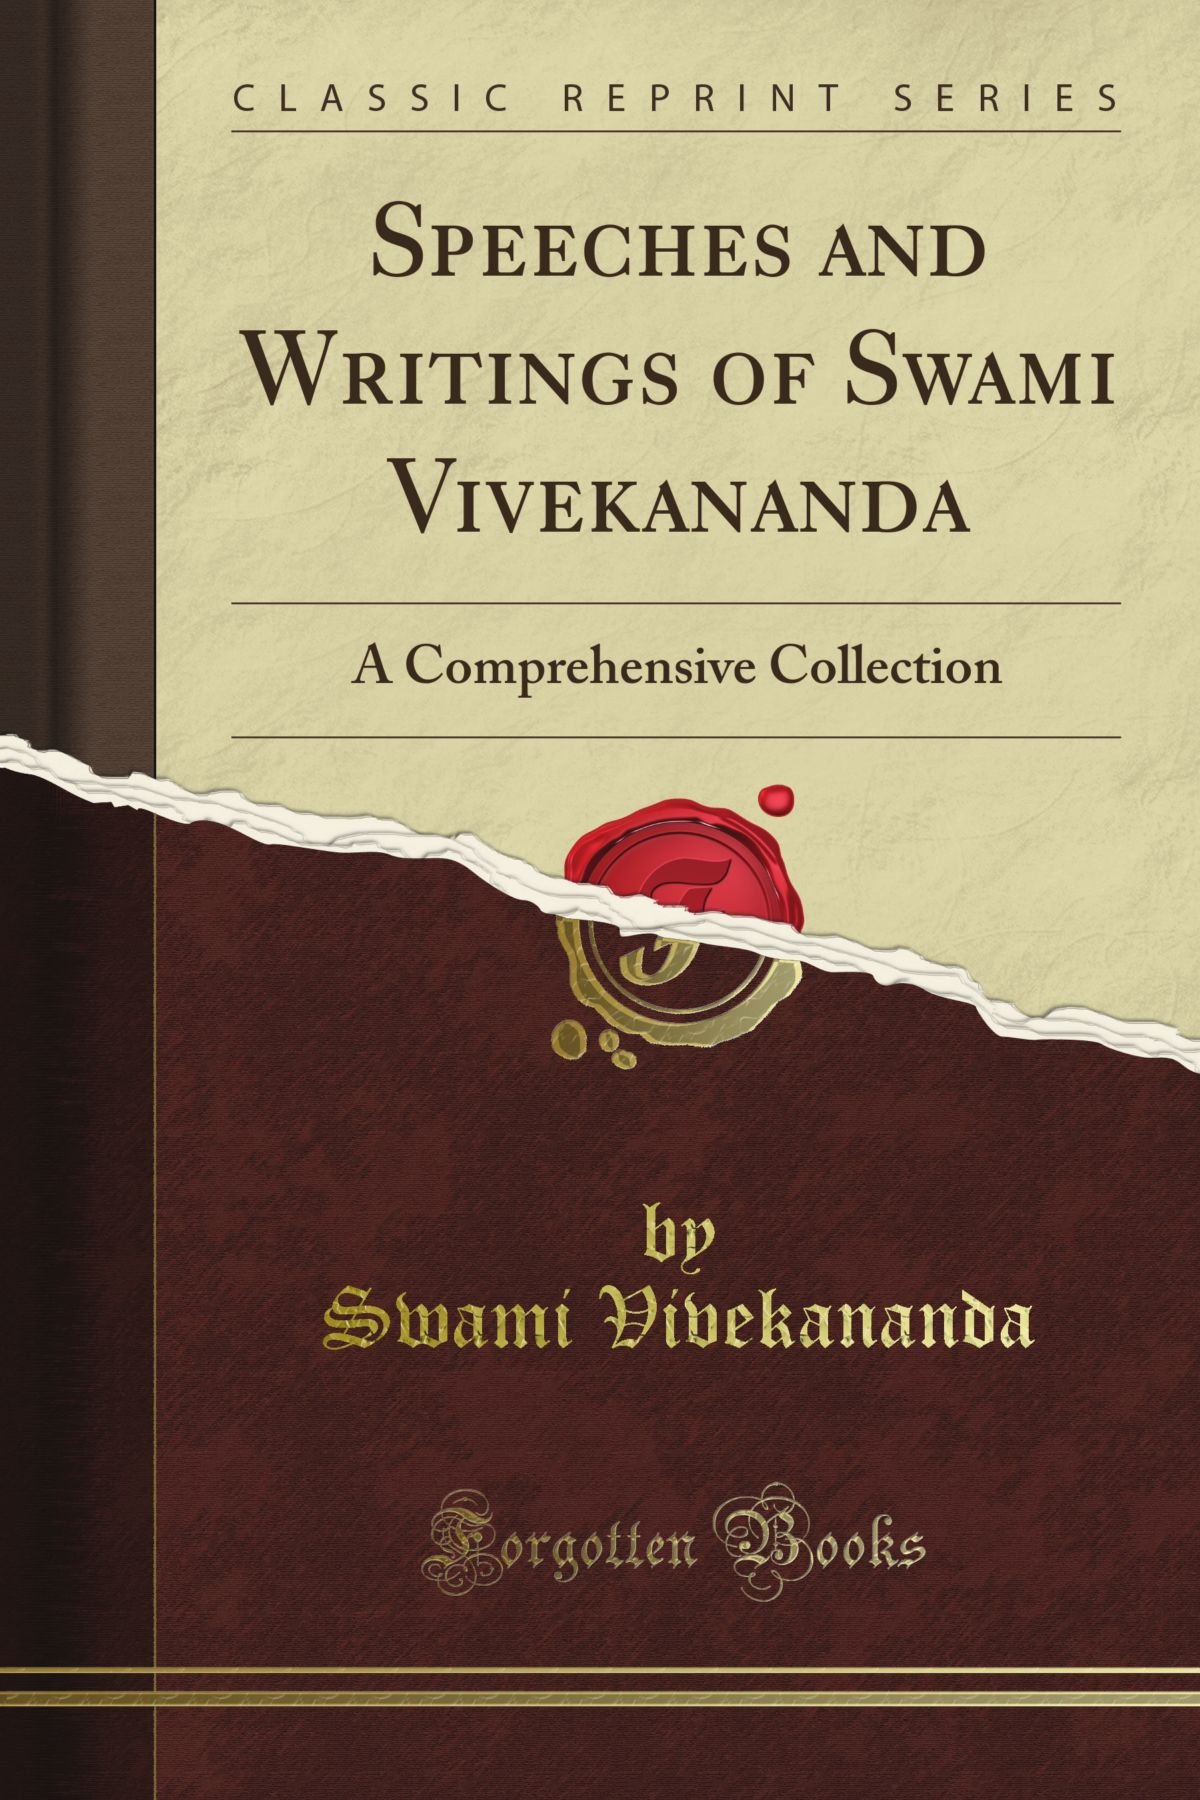 Speeches and writings of Swami Vivekananda